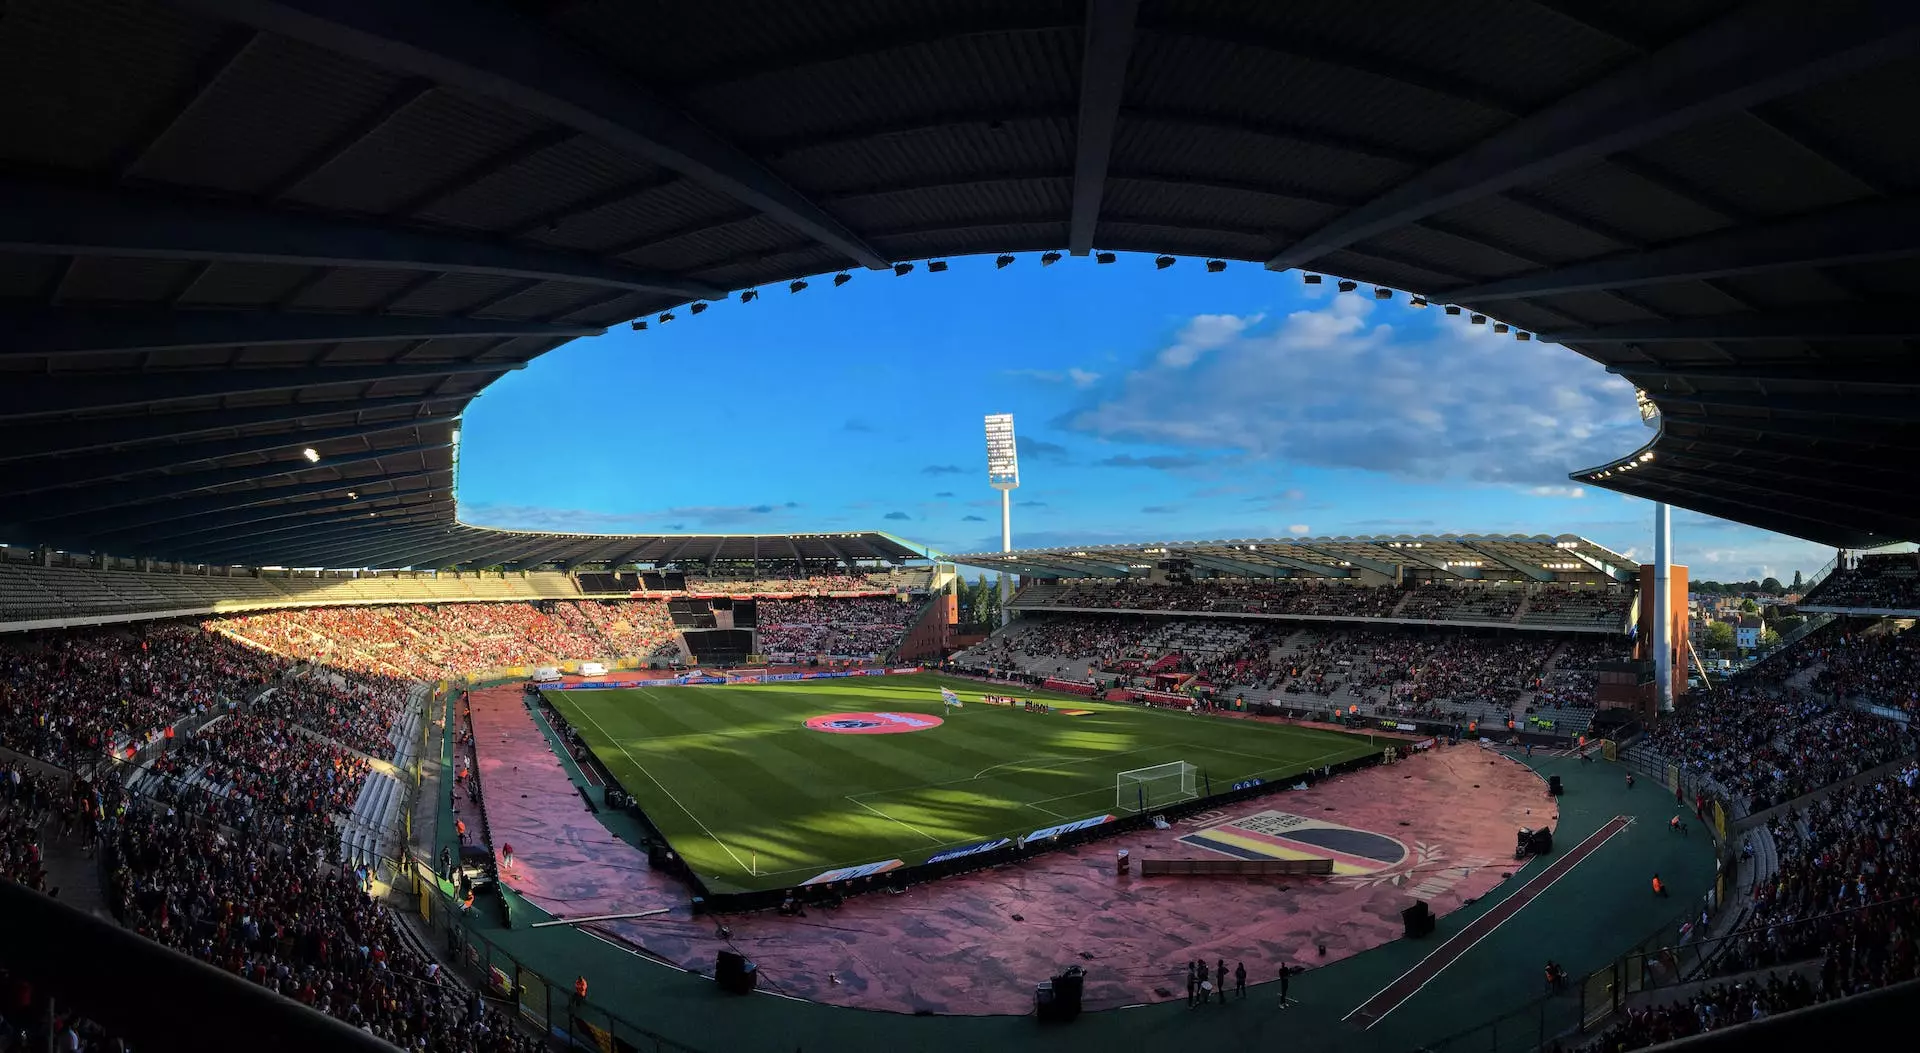 Belgia Fotball: En dypdykk inn i de røde djevlenes verden